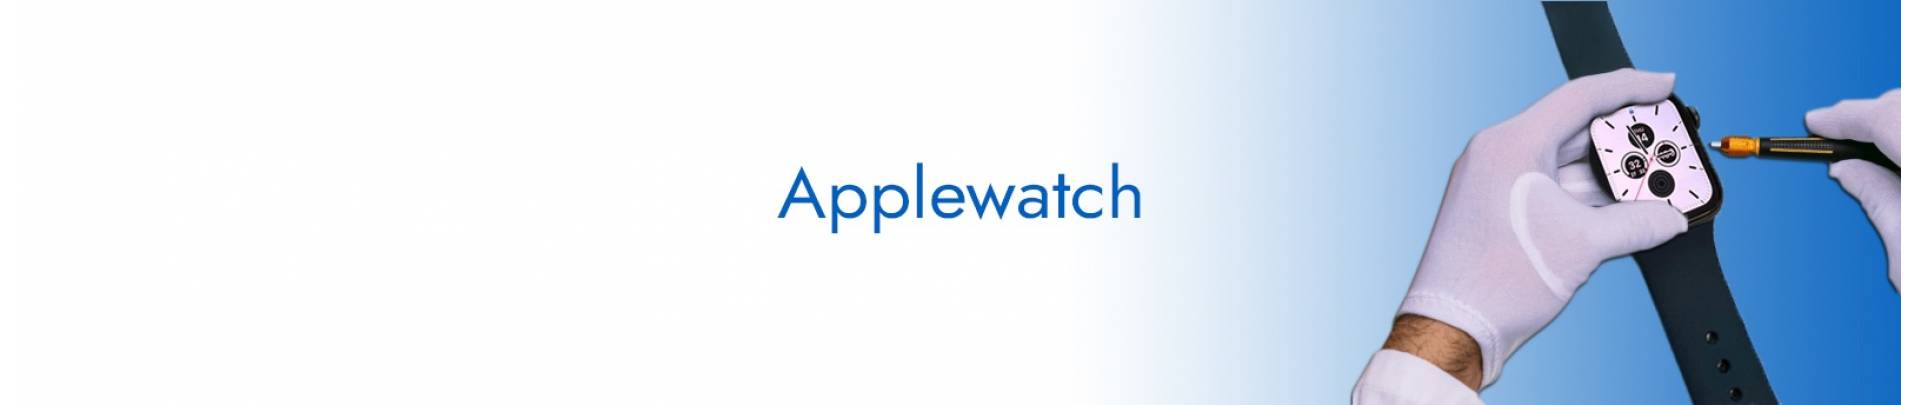 Reparación de Applewatch